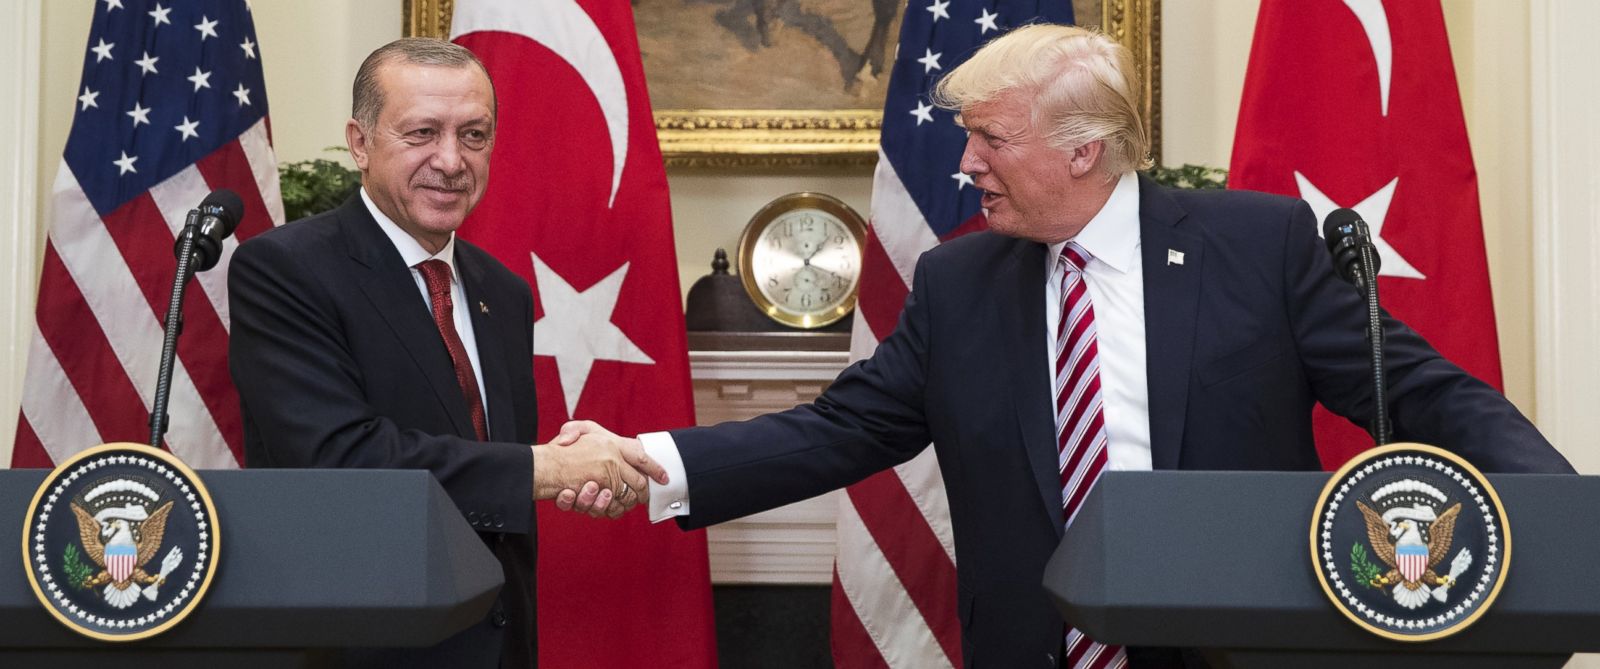 Ντ. Τραμπ και Ρ.Τ. Ερντογάν ανακοίνωσαν αντιτρομοκρατική συμμαχία ενάντια σε ISIS, PKK και FETÖ